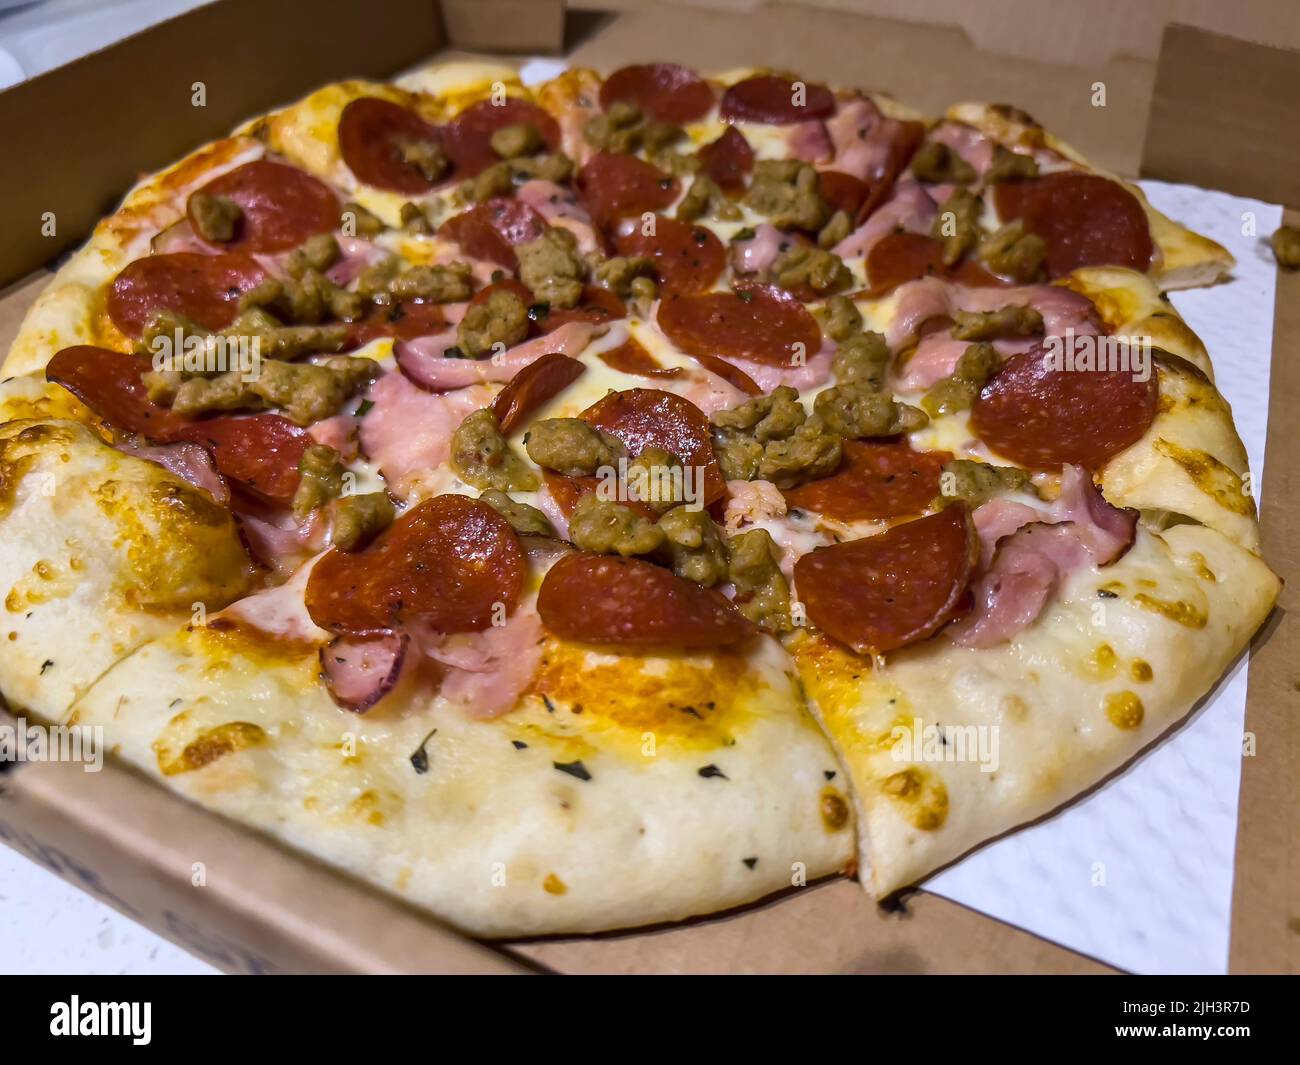 Primer plano, enfoque selectivo en una pizza amantes de la carne dentro de una caja de entrega de cartón Foto de stock